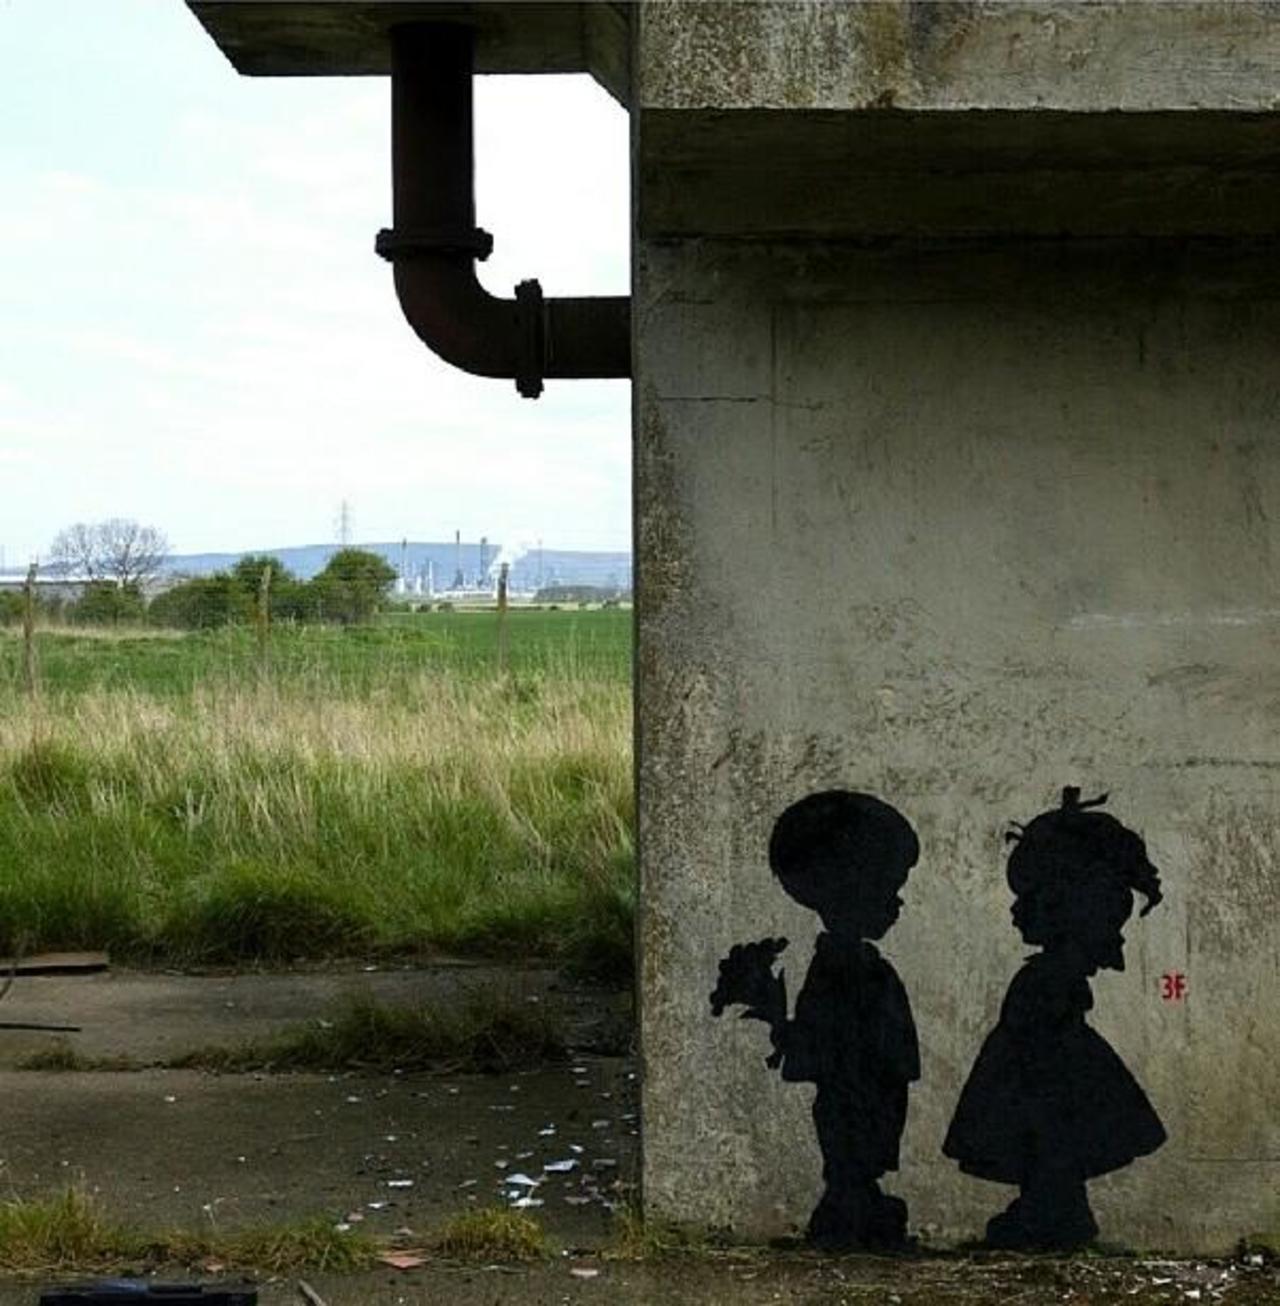 Sistemas4s: Found love in a hopeless place!

Street Art by 3fountains 

#art #mural #graffiti #streetart http://t.co/CVMEn7729G